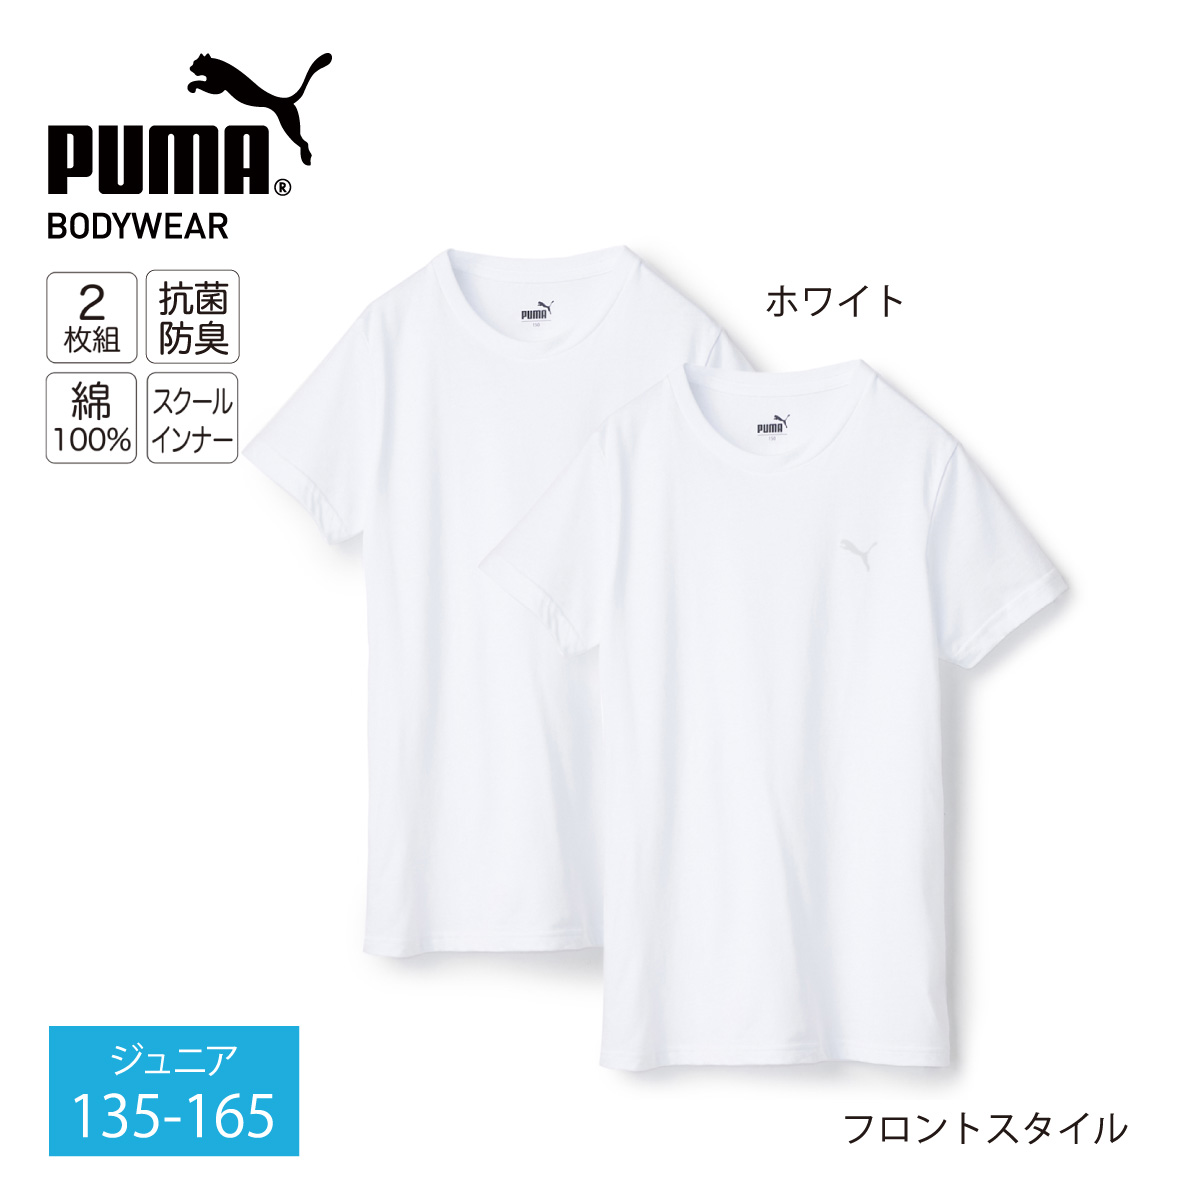 高級素材使用ブランド PUMA男の子肌着140 i9tmg.com.br